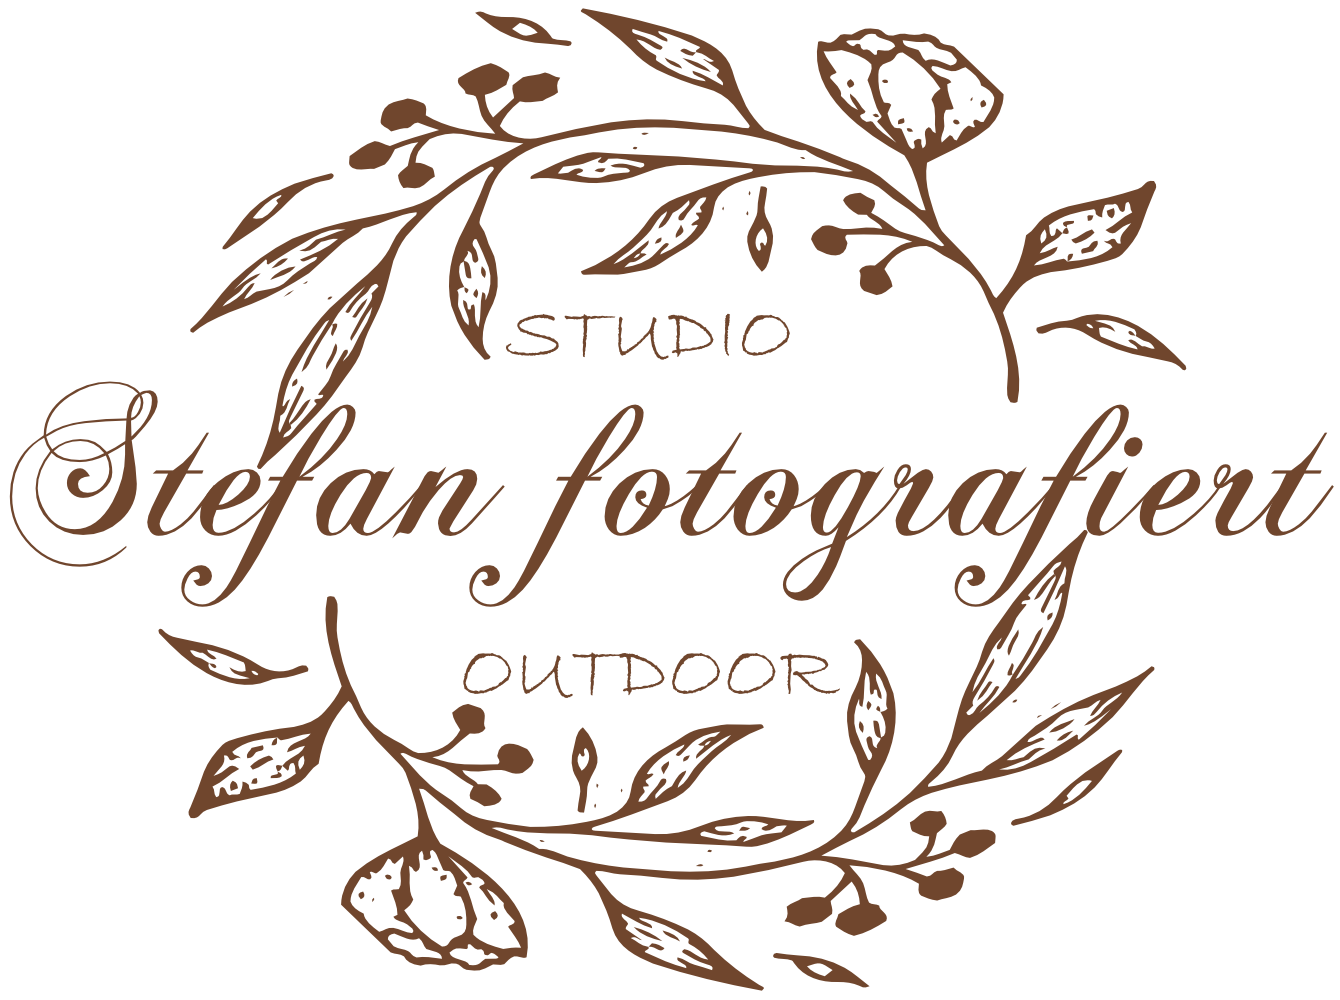 stefan-fotografiert-logo